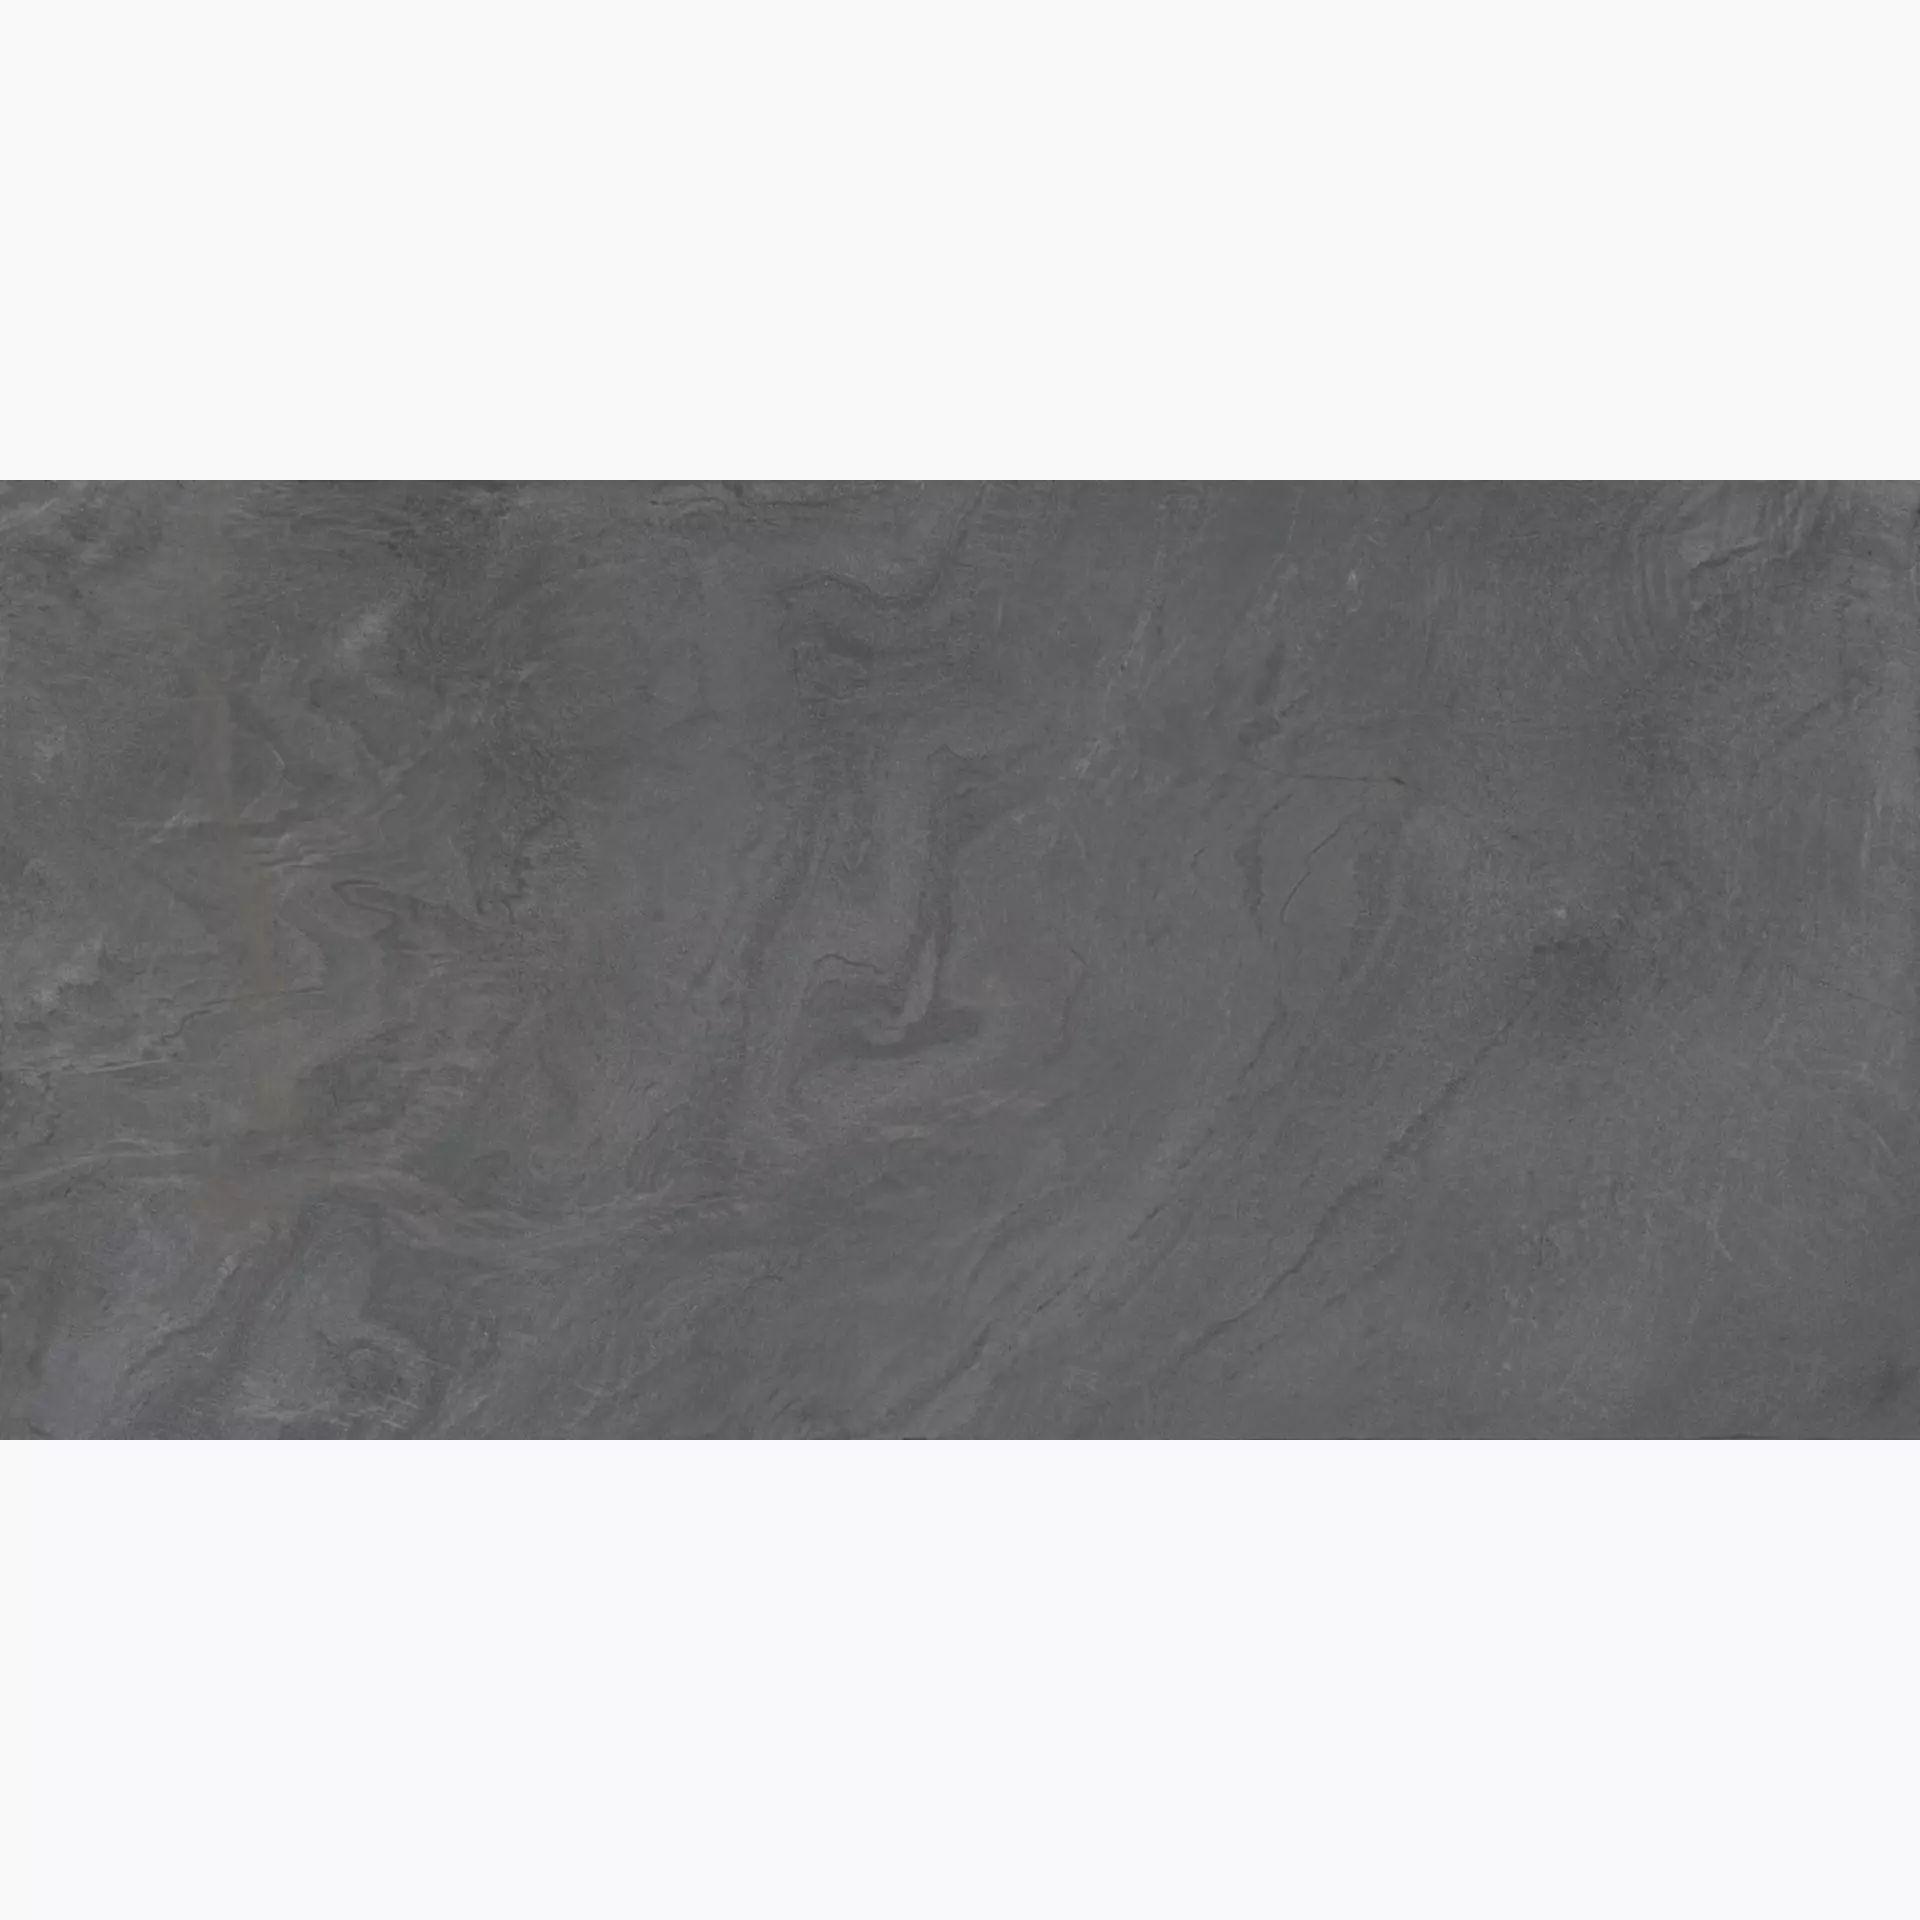 Diesel Diesel Liquid Stone Black Naturale – Matt 892748 60x120cm rektifiziert 9mm